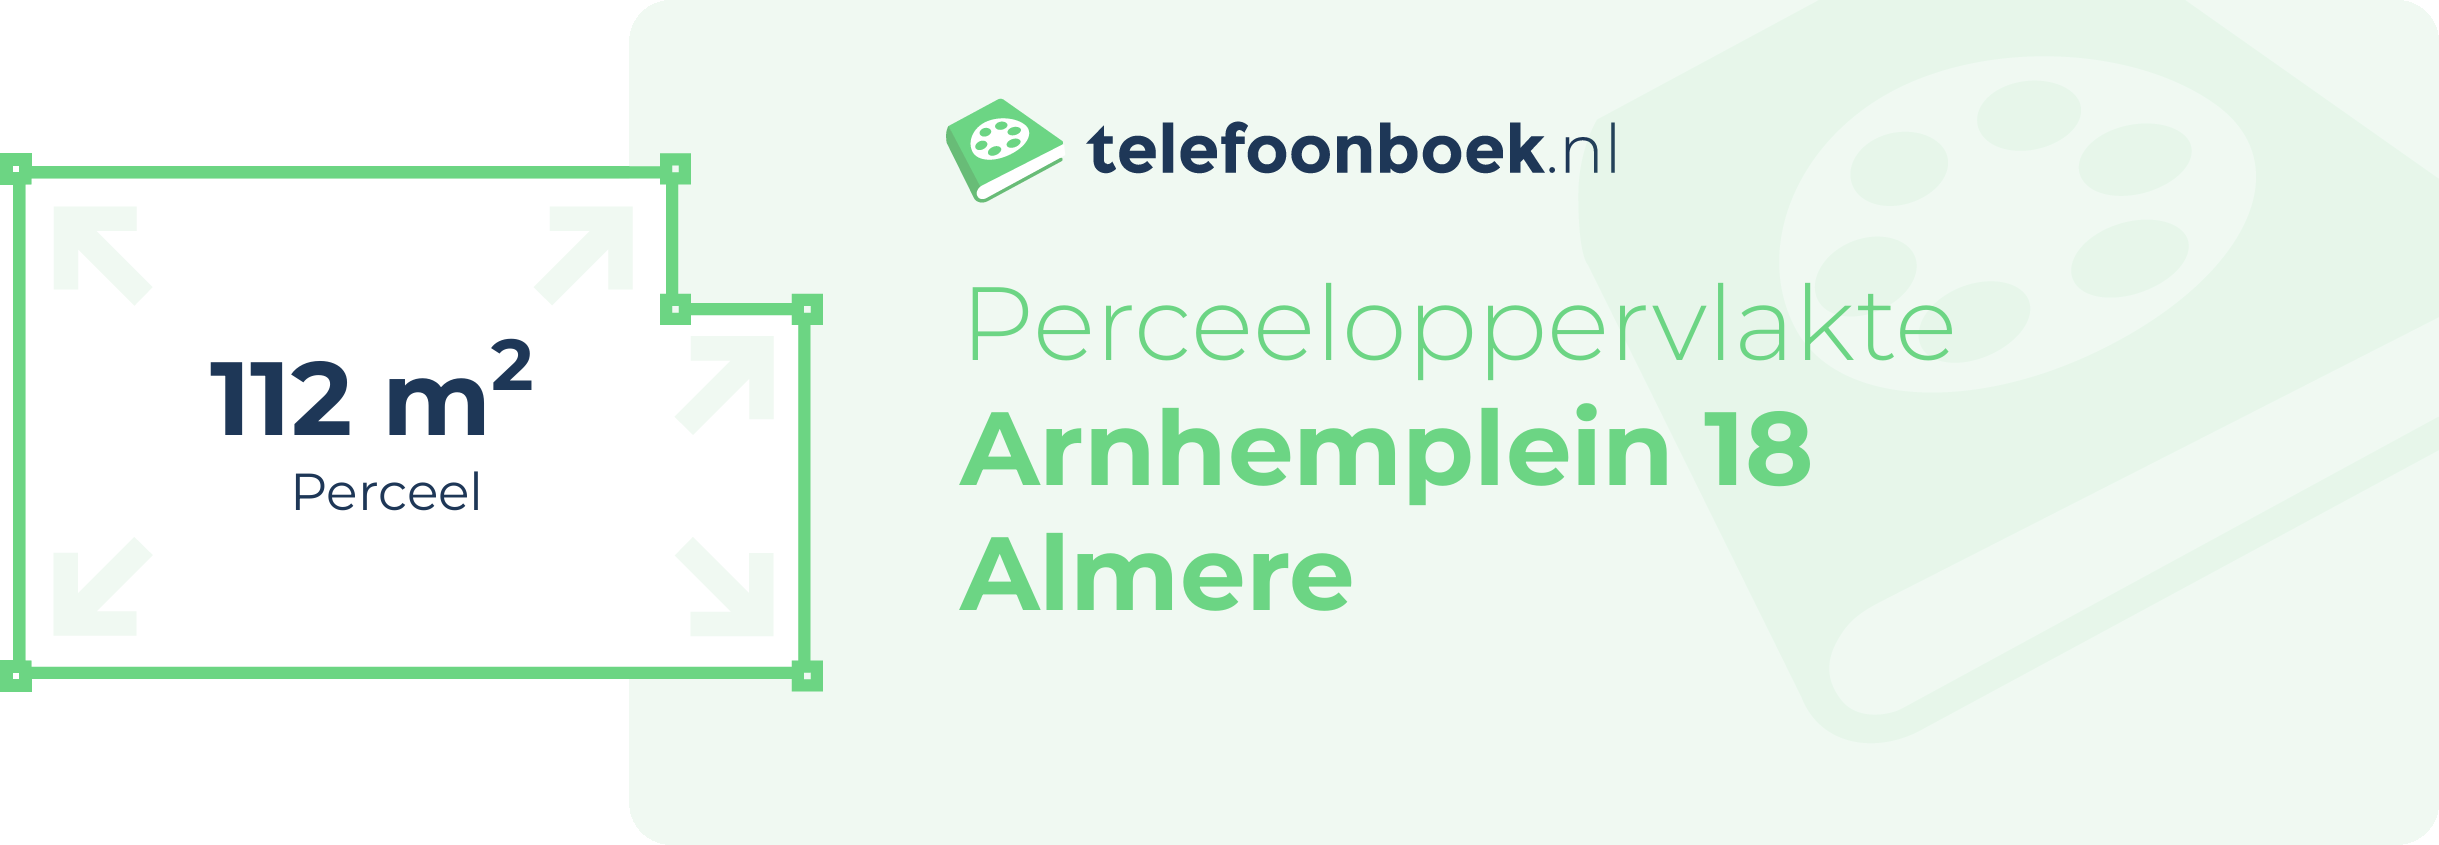 Perceeloppervlakte Arnhemplein 18 Almere